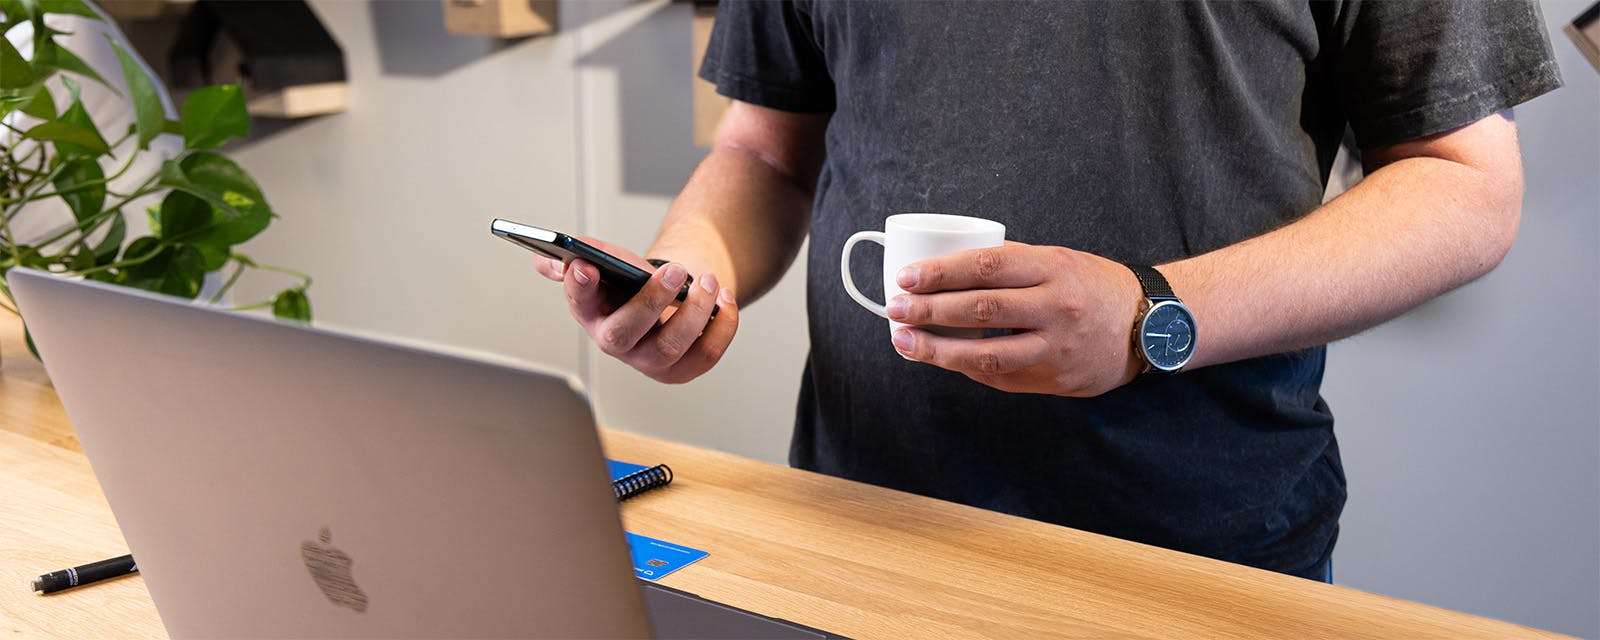 Uitsnede van persoon met laptop en koffie in de hand terwijl hij achter een hoge tafel staat met zijn laptop voor zich